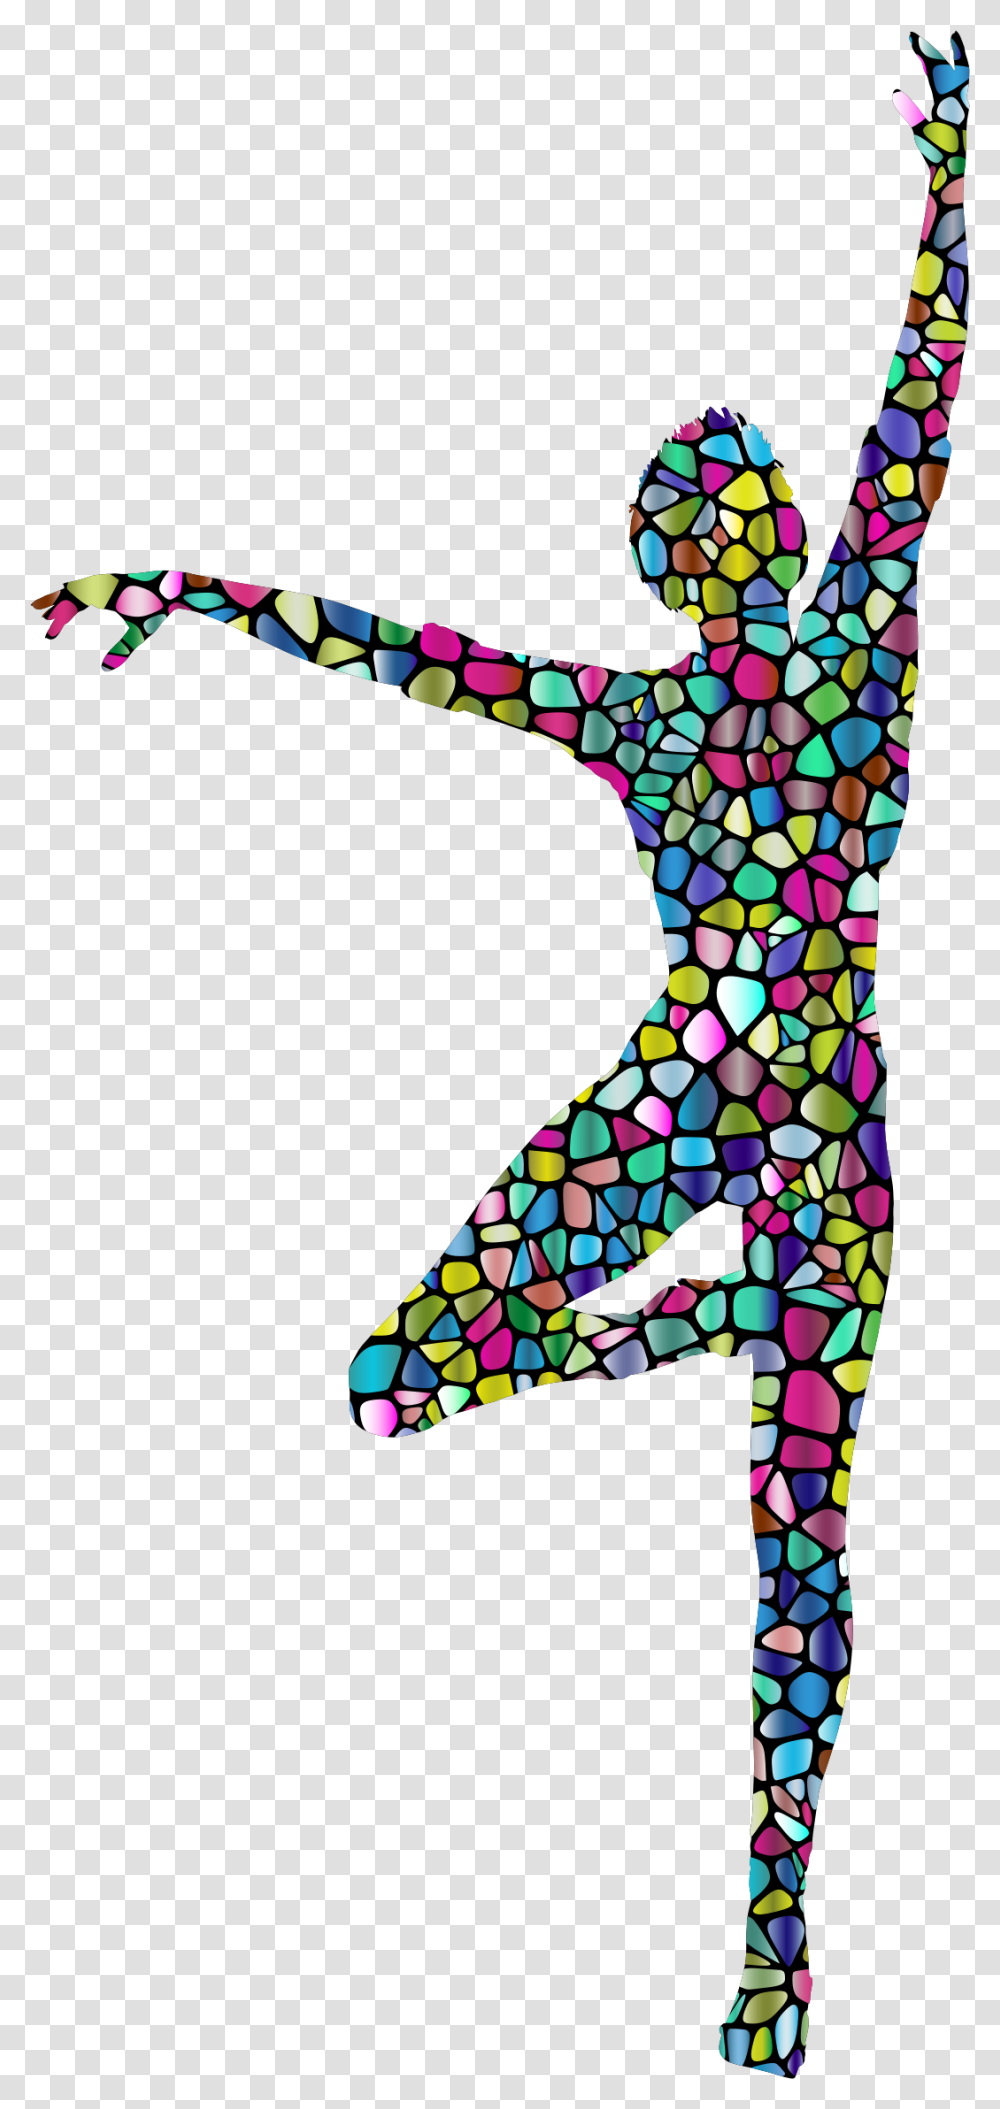 Polyprismatic Tiled Dancing Woman Silhouette Background Dance Clip Art, Label, Brick, Applique Transparent Png